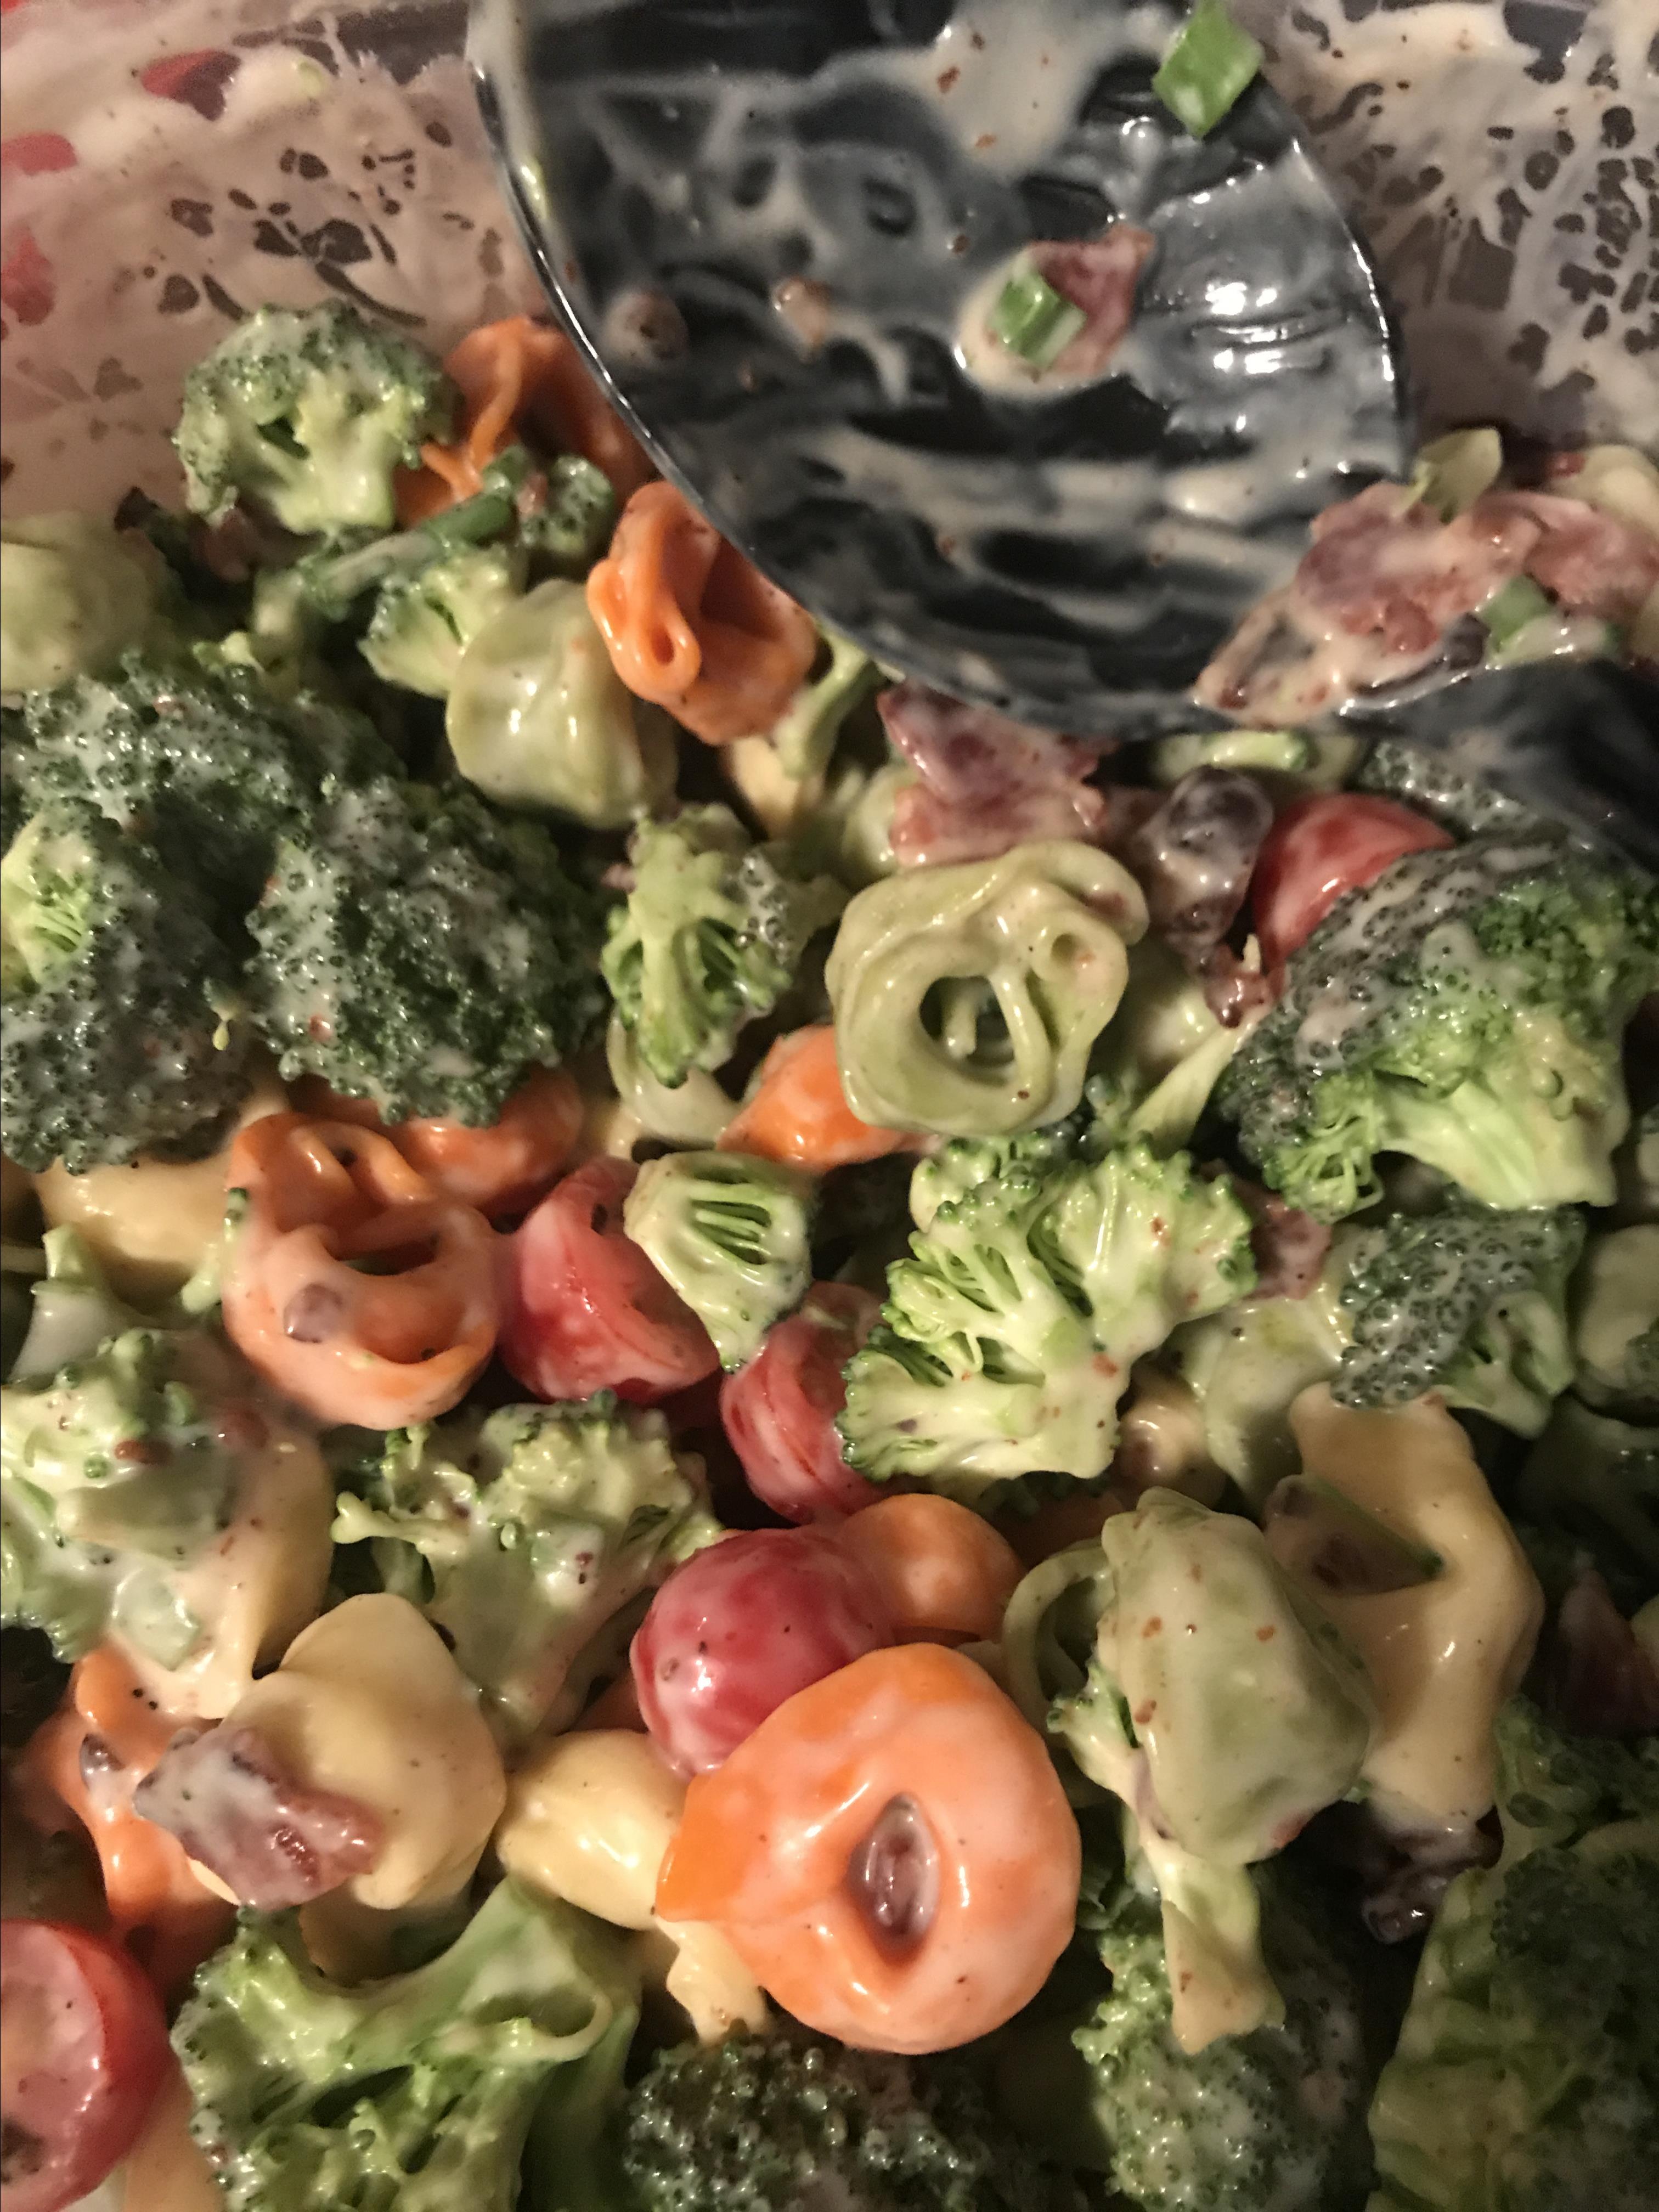 Tortellini Bacon Broccoli Salad Recipe - Allrecipes.com